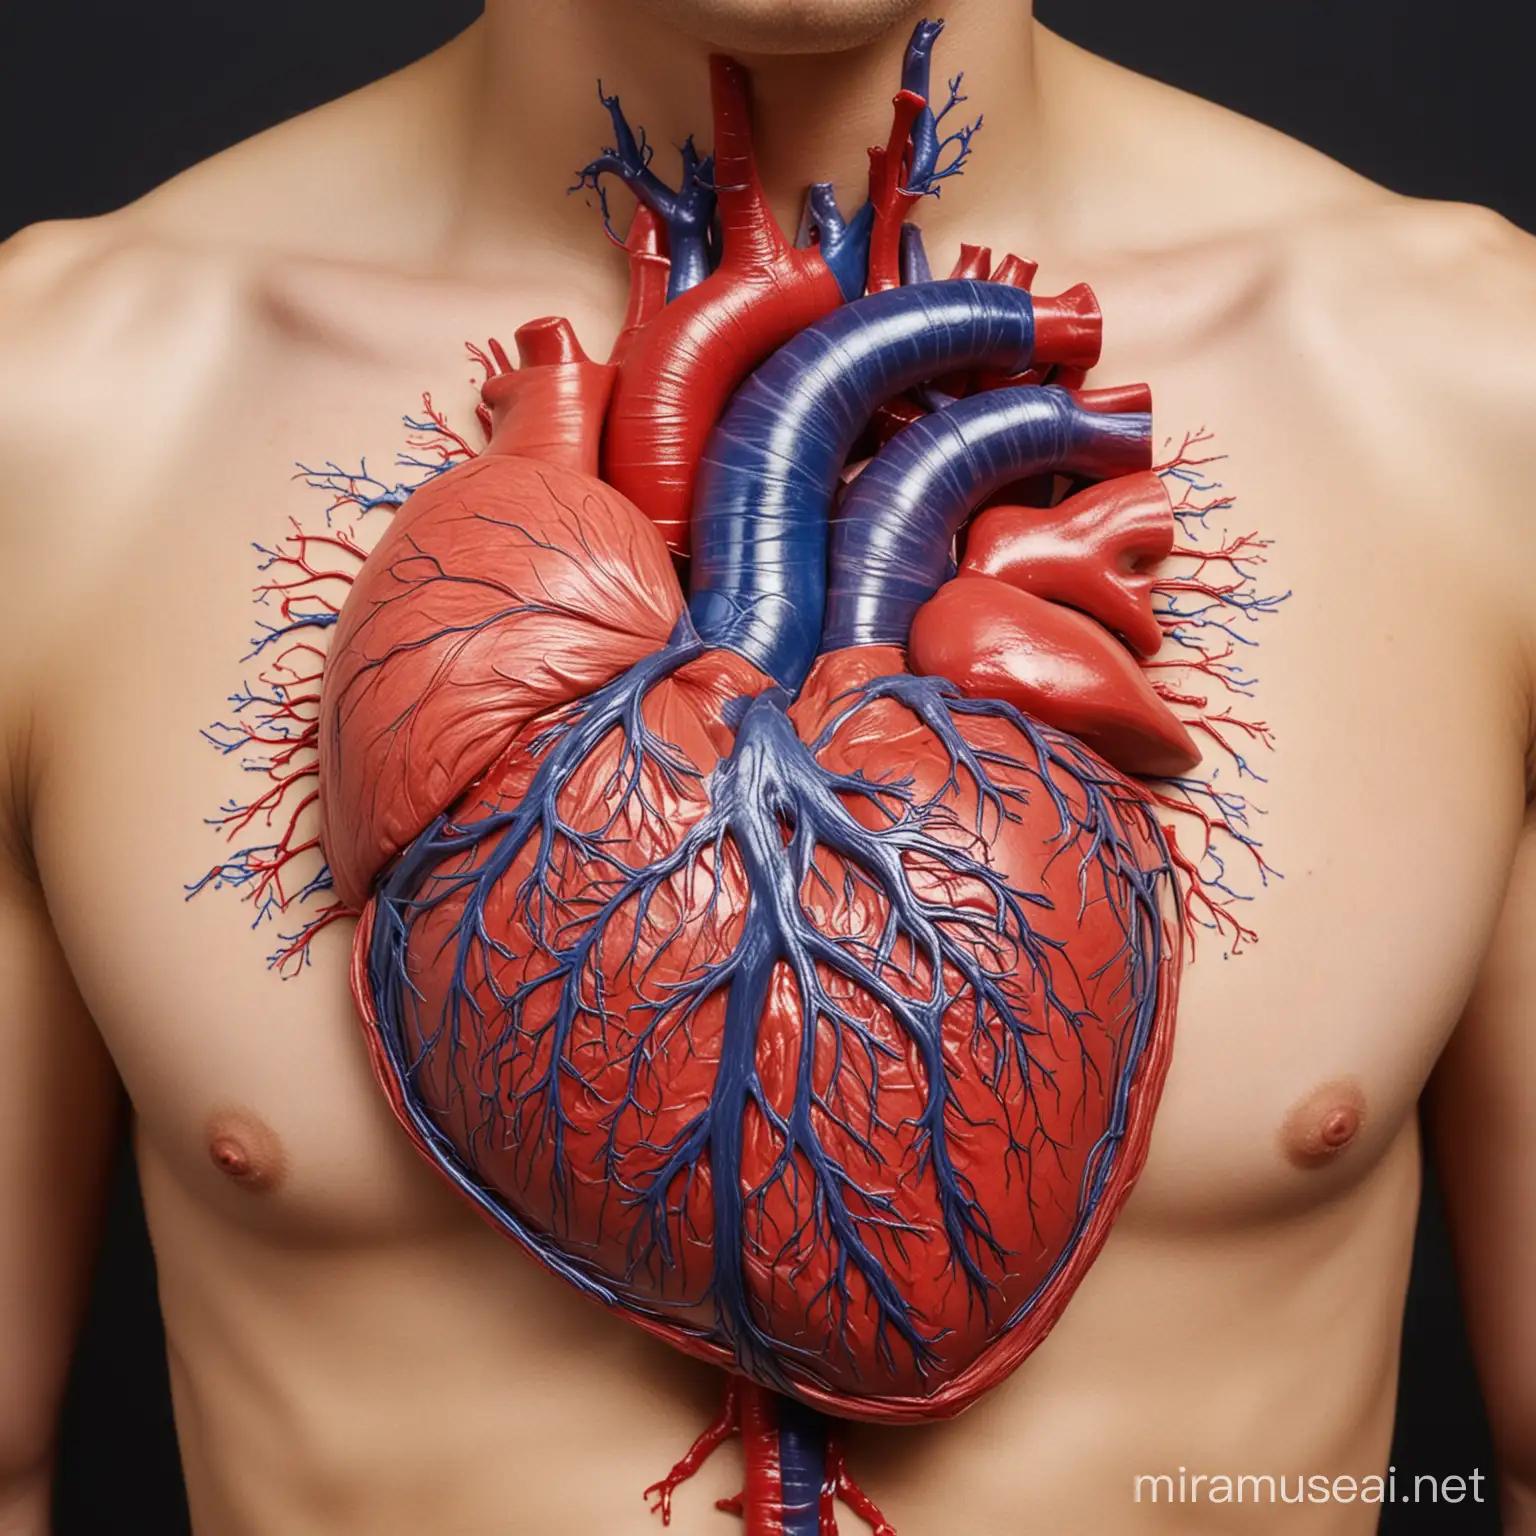 Crea el sistema circulatorio humano lo más completo con todas sus venas y arterias.  El corazón debe casi para italiano.  Muestra cada vena y arterias bien visibles 